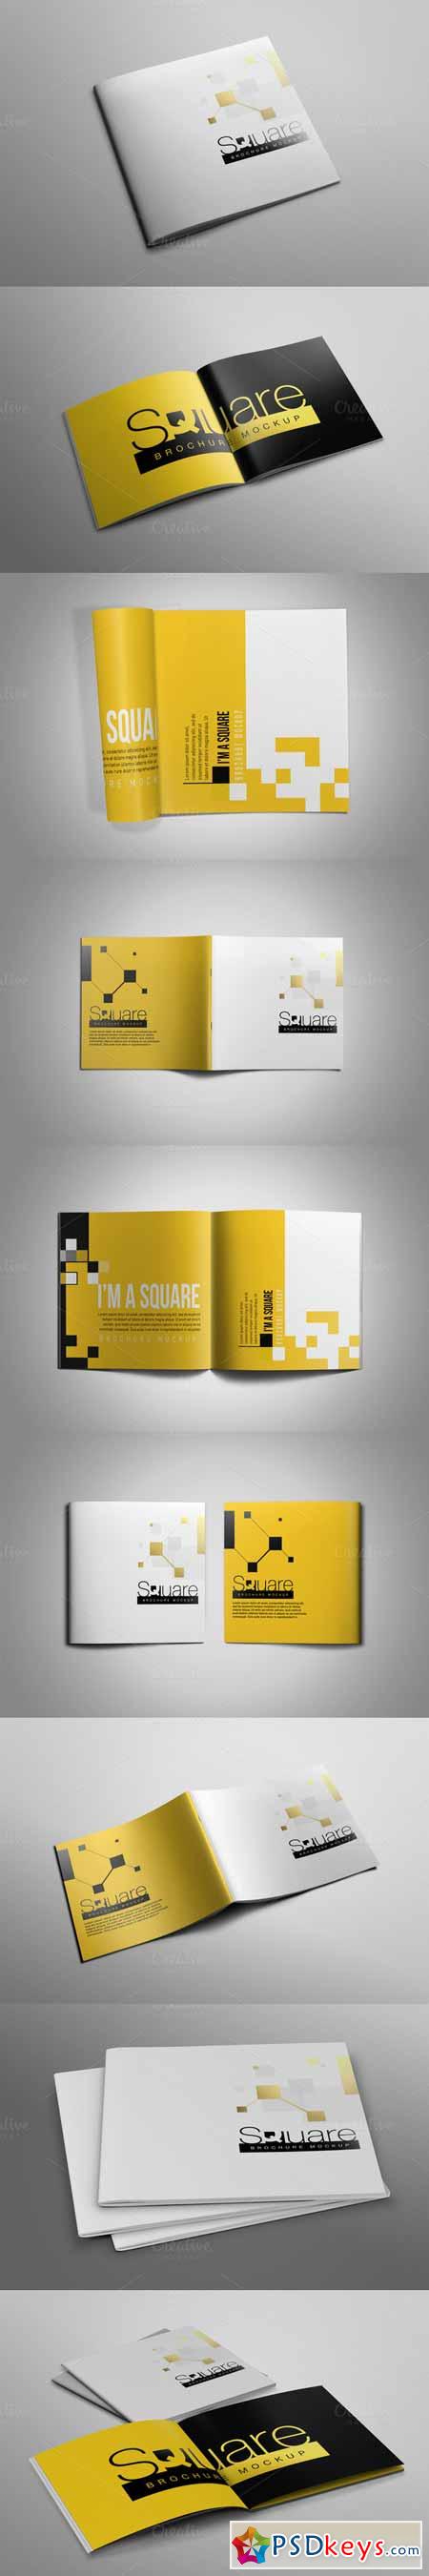 Square Brochure Mockup 479861